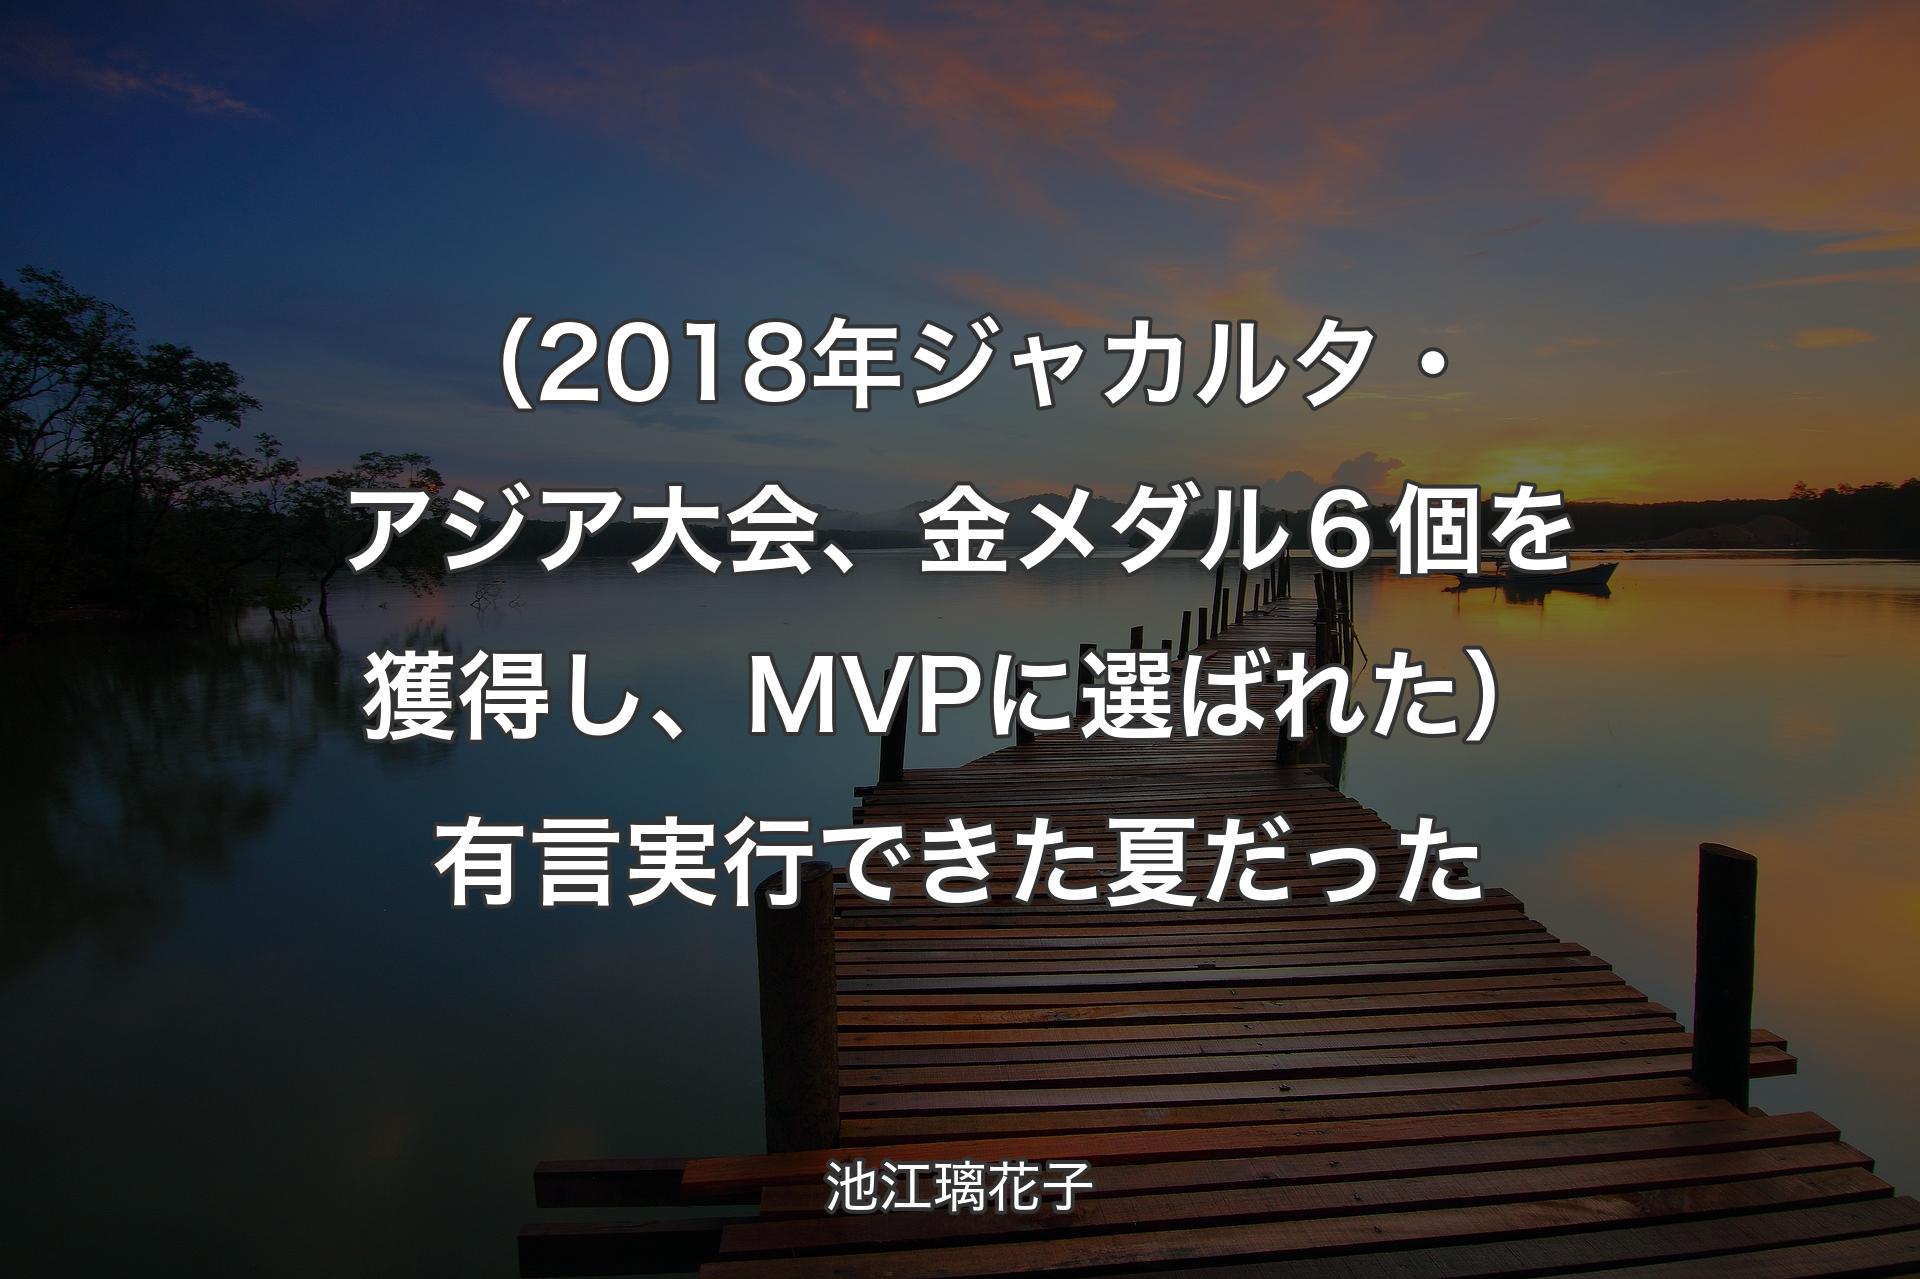 【背景3】（2018年��ジャカルタ・アジア大会、金メダル６個を獲得し、MVPに選ばれた）有言実行できた夏だった - 池江璃花子